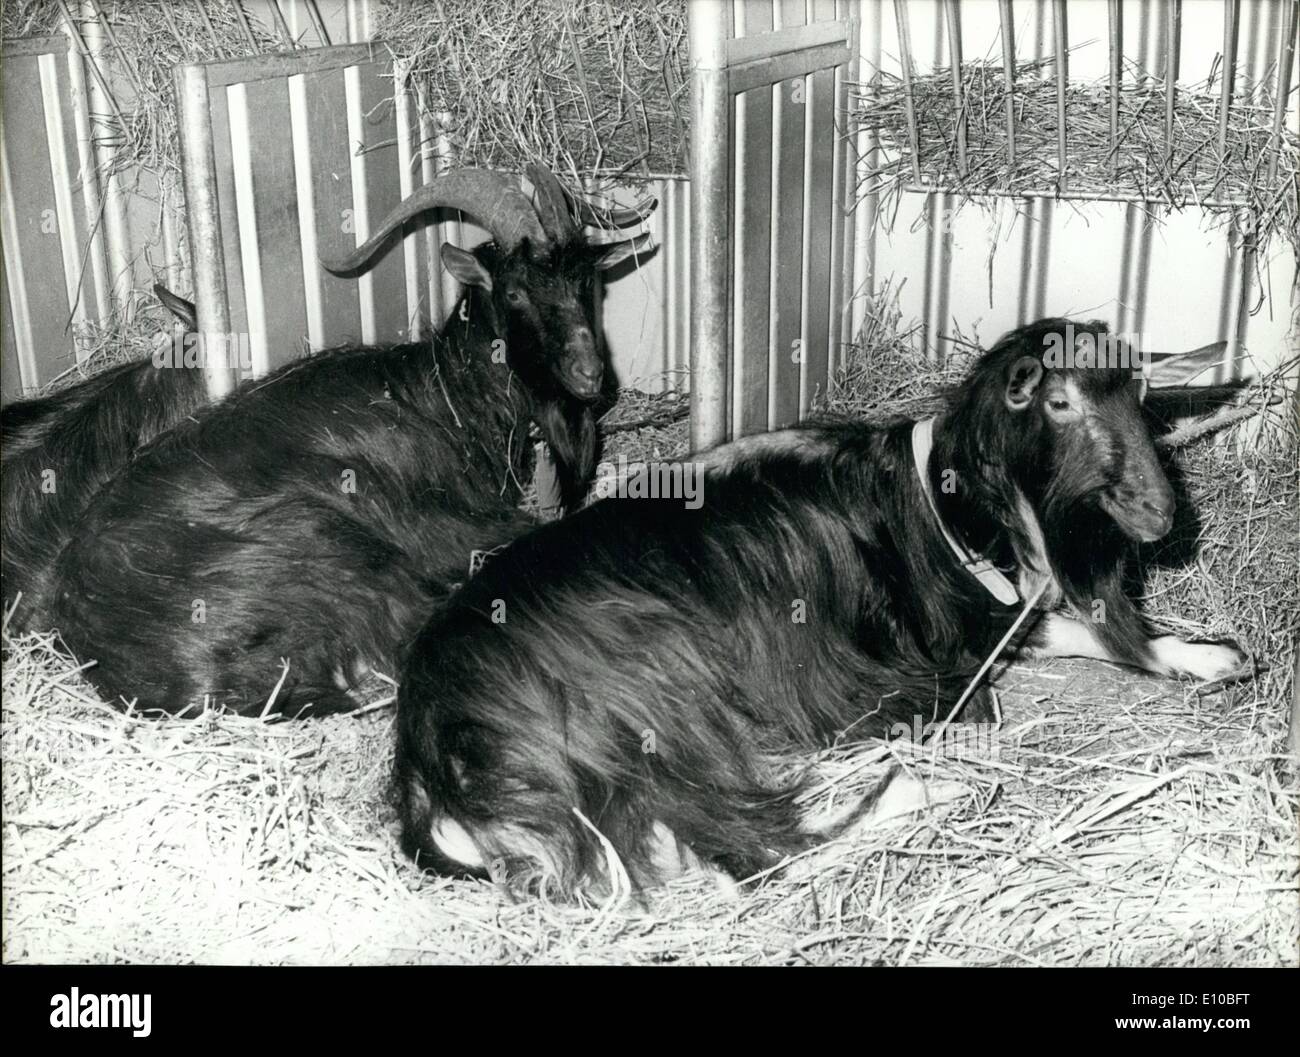 Mar 03, 1972 - Il 9° International Fiera Agricola che appena aperto presso la Porte de Versailles a Parigi ha presentato diversi esemplari di animali che rappresentano una campionatura di quelli qui sollevate in Francia. Ecco una foto di due capre. Quella a sinistra è chiamato Foto Stock